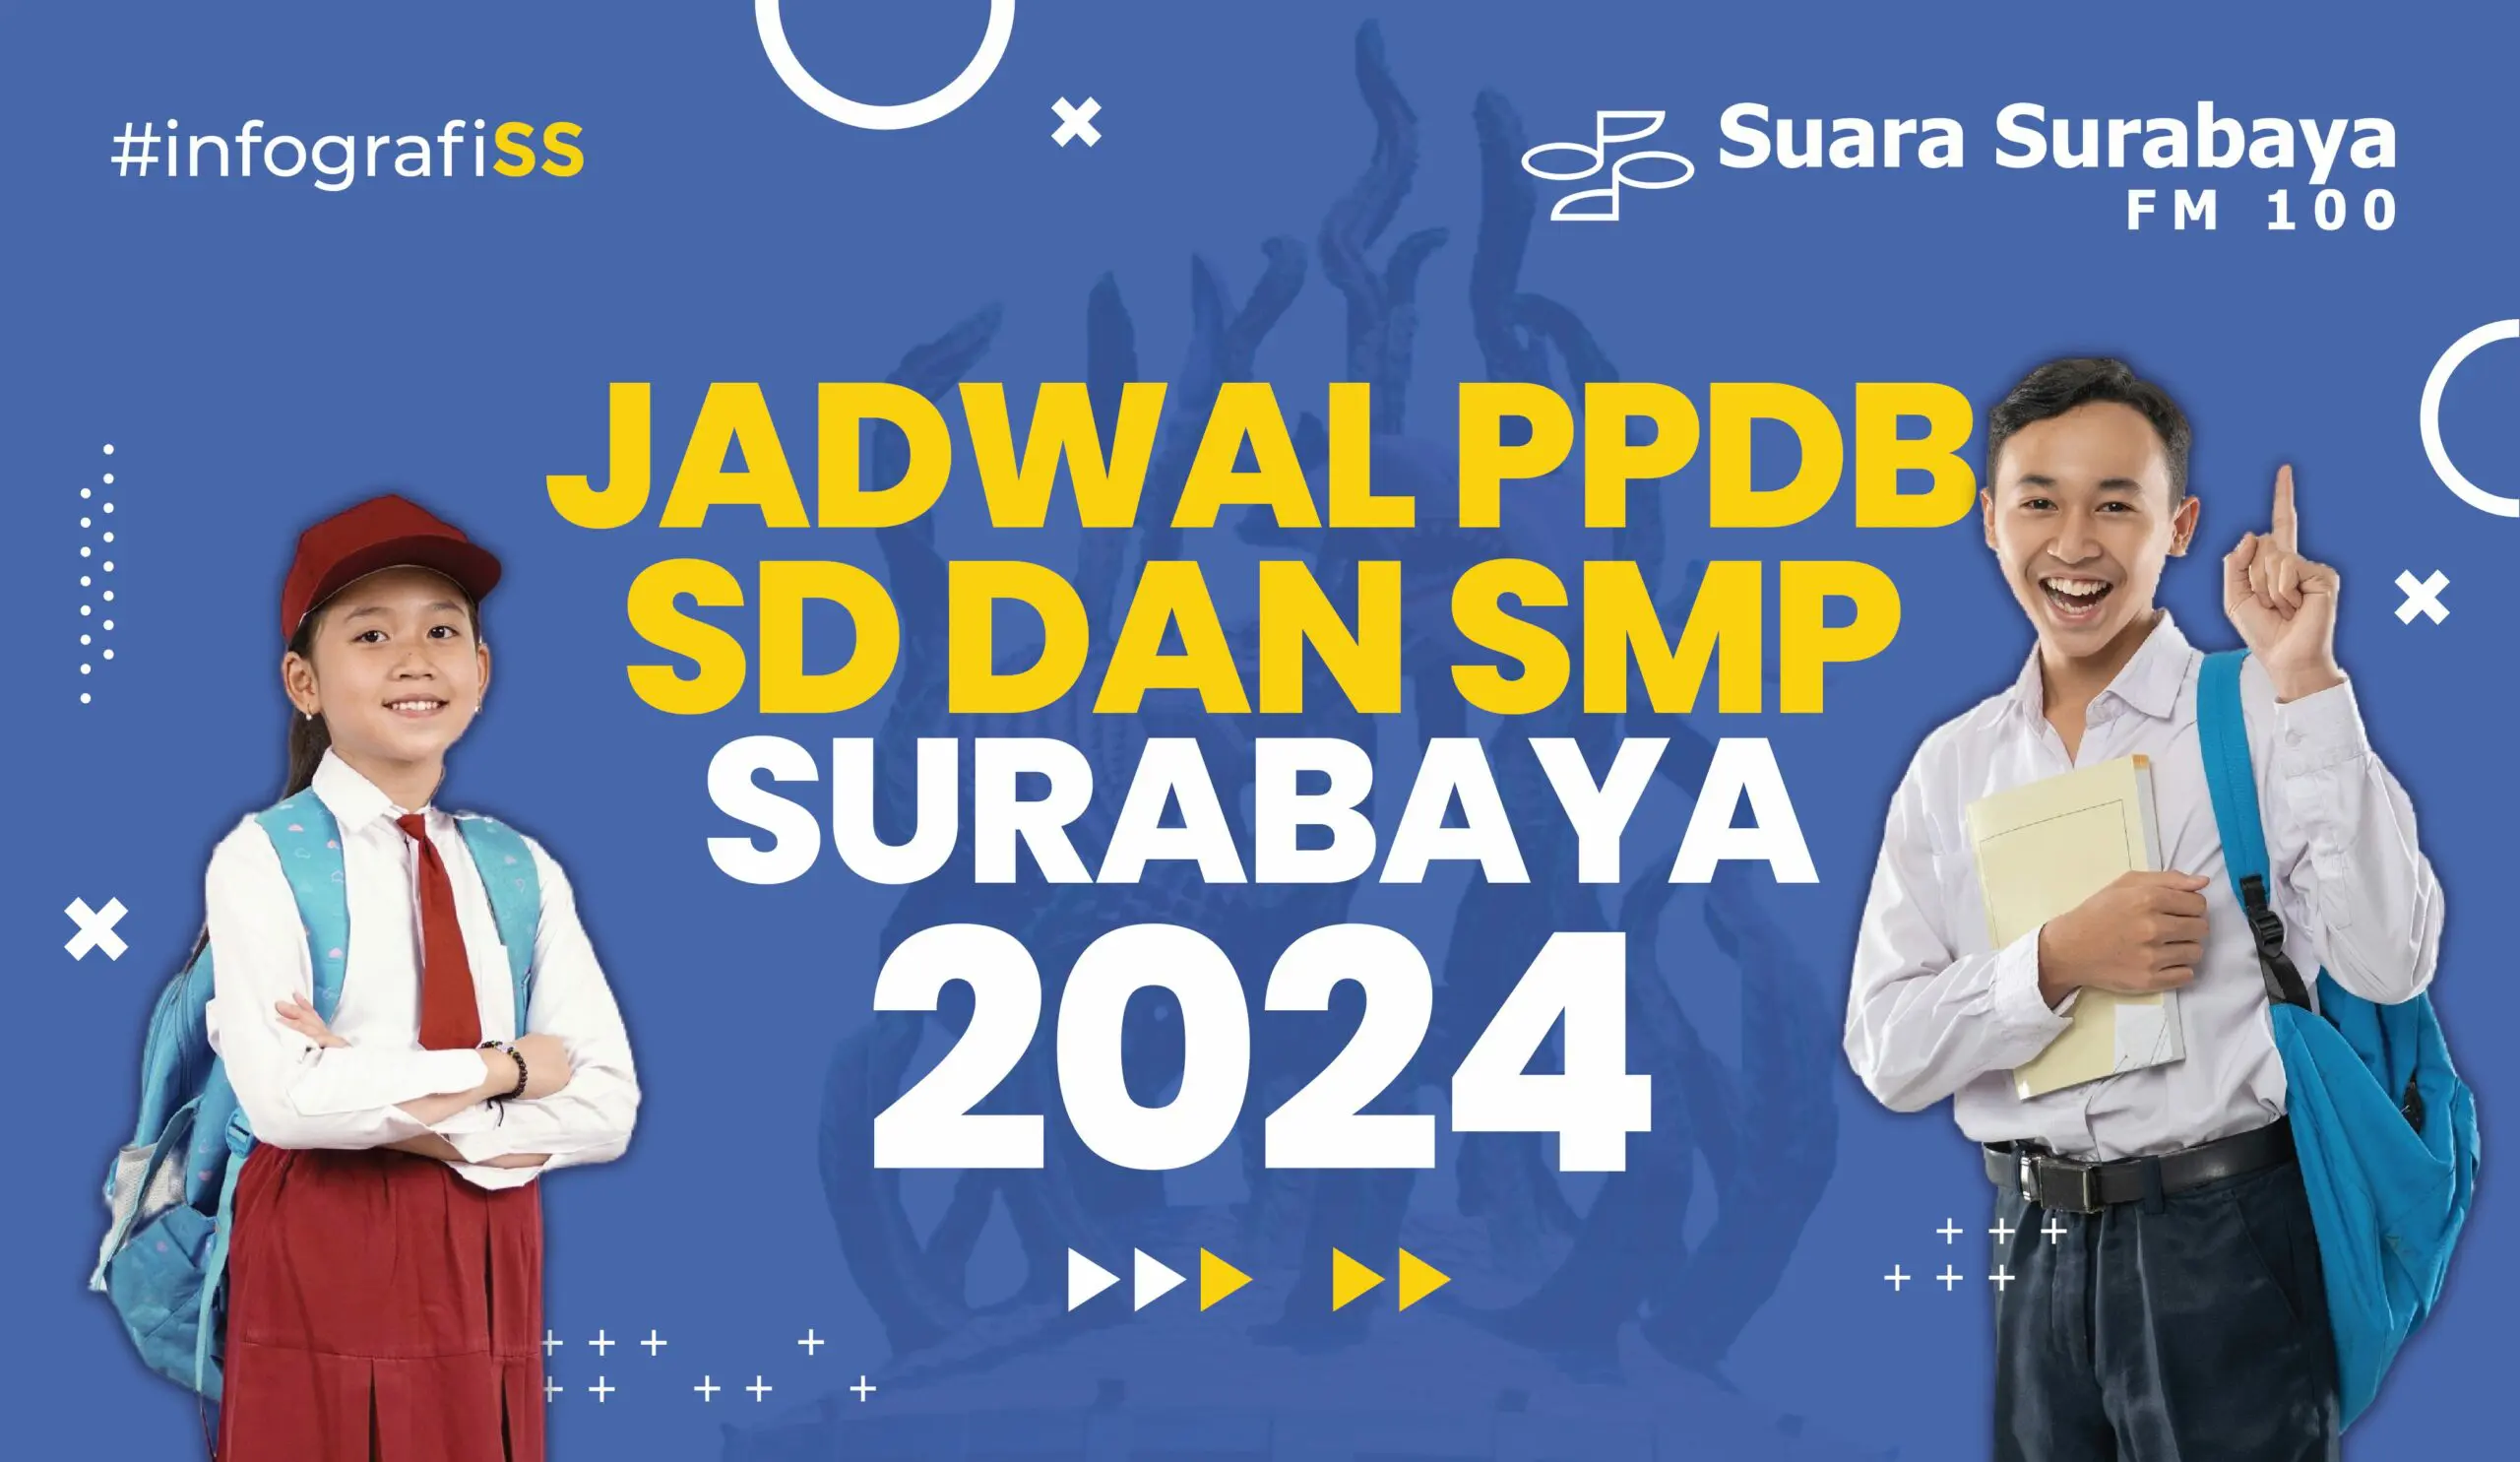 PPDB SD Surabaya 2024